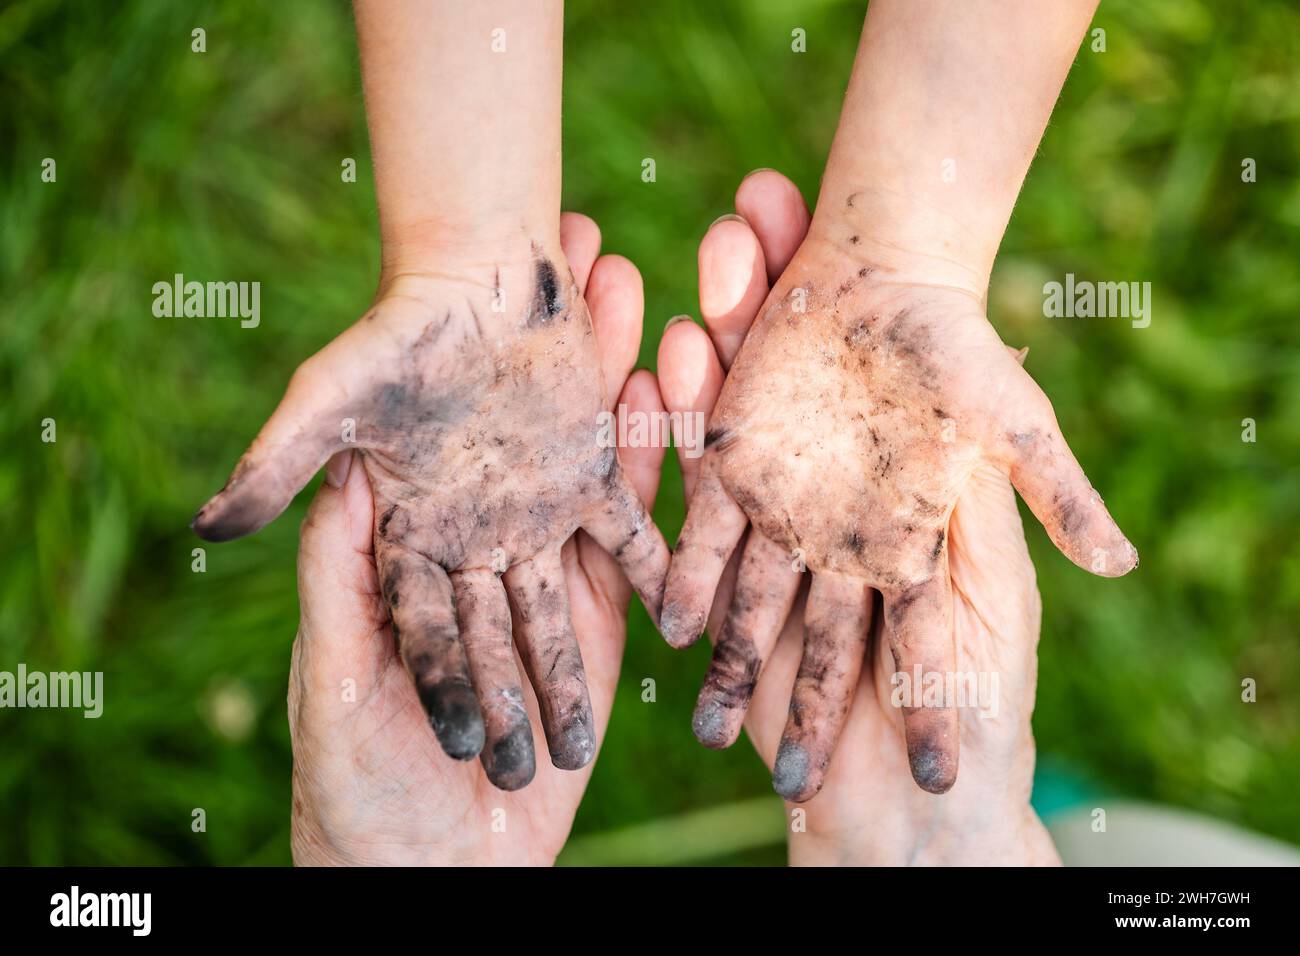 Ein kleines Mädchen zeigt ihre schmutzigen Hände, bedeckt mit schwarzer Asche, vom Spielen im Freien, die schwer abzuwaschen sind Stockfoto